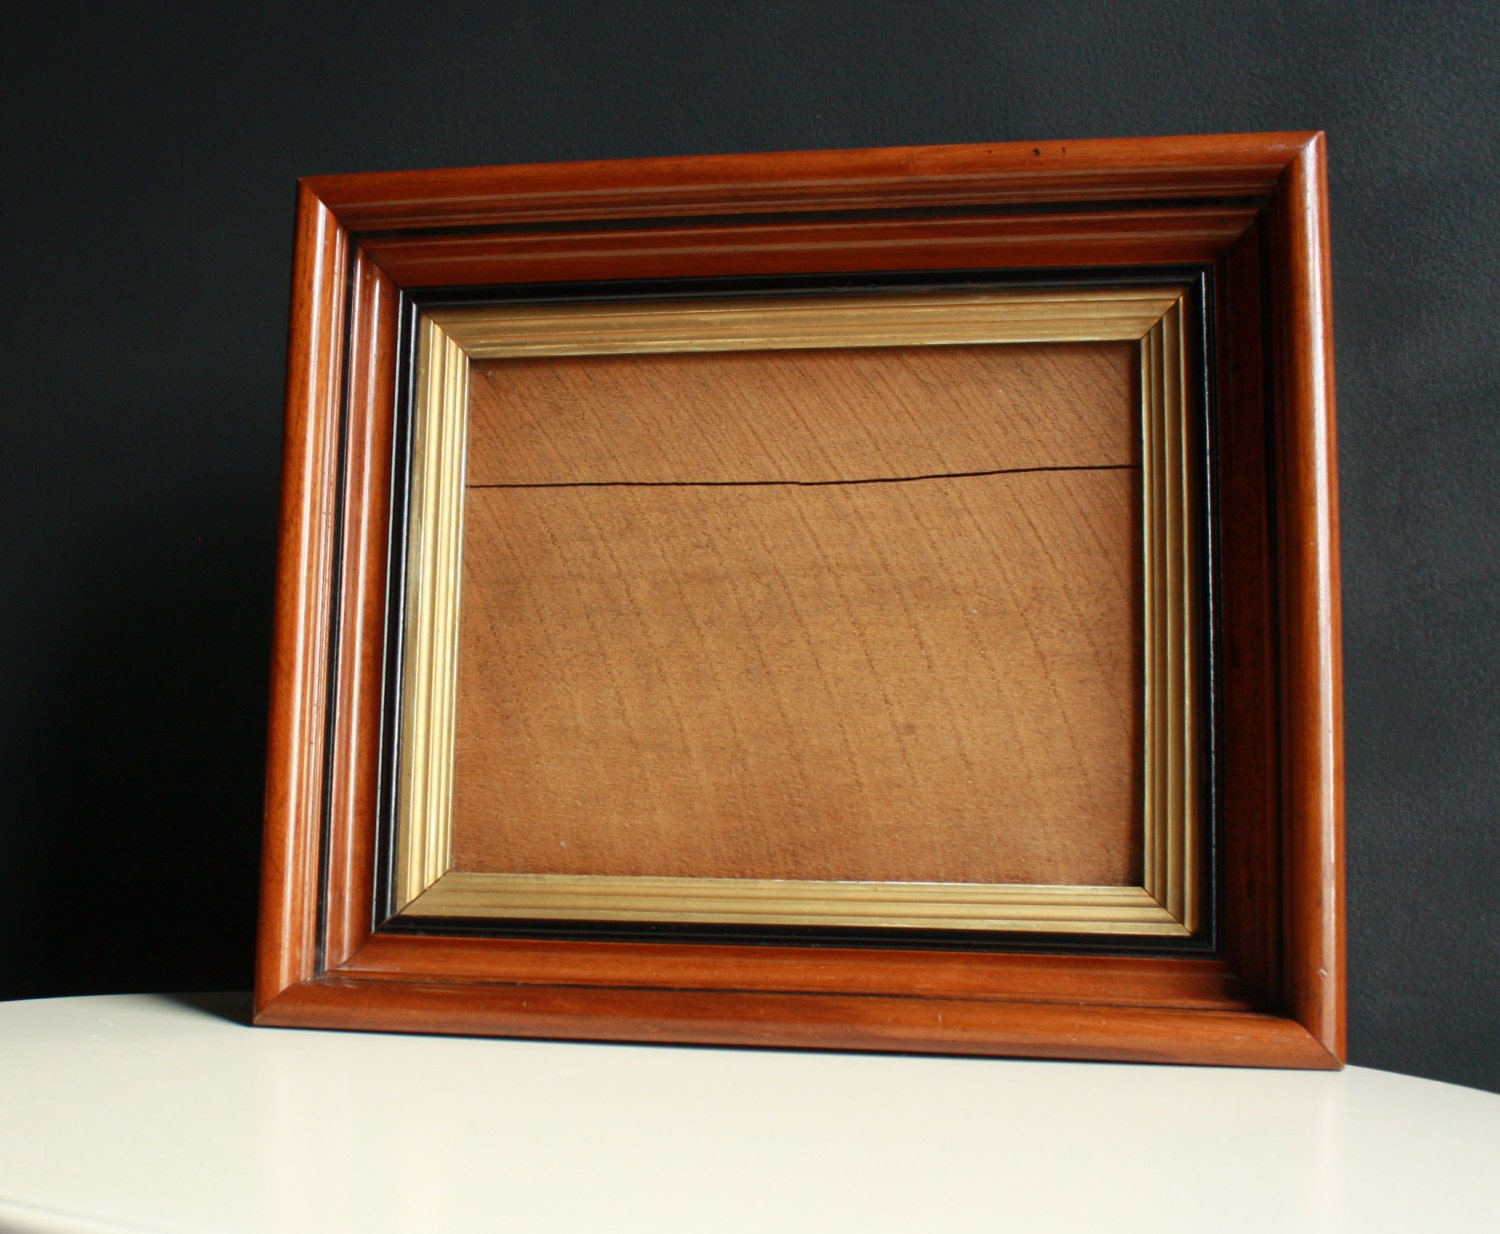 1800s Antique Solid Wood Frame. Real Wood Frame. Antique